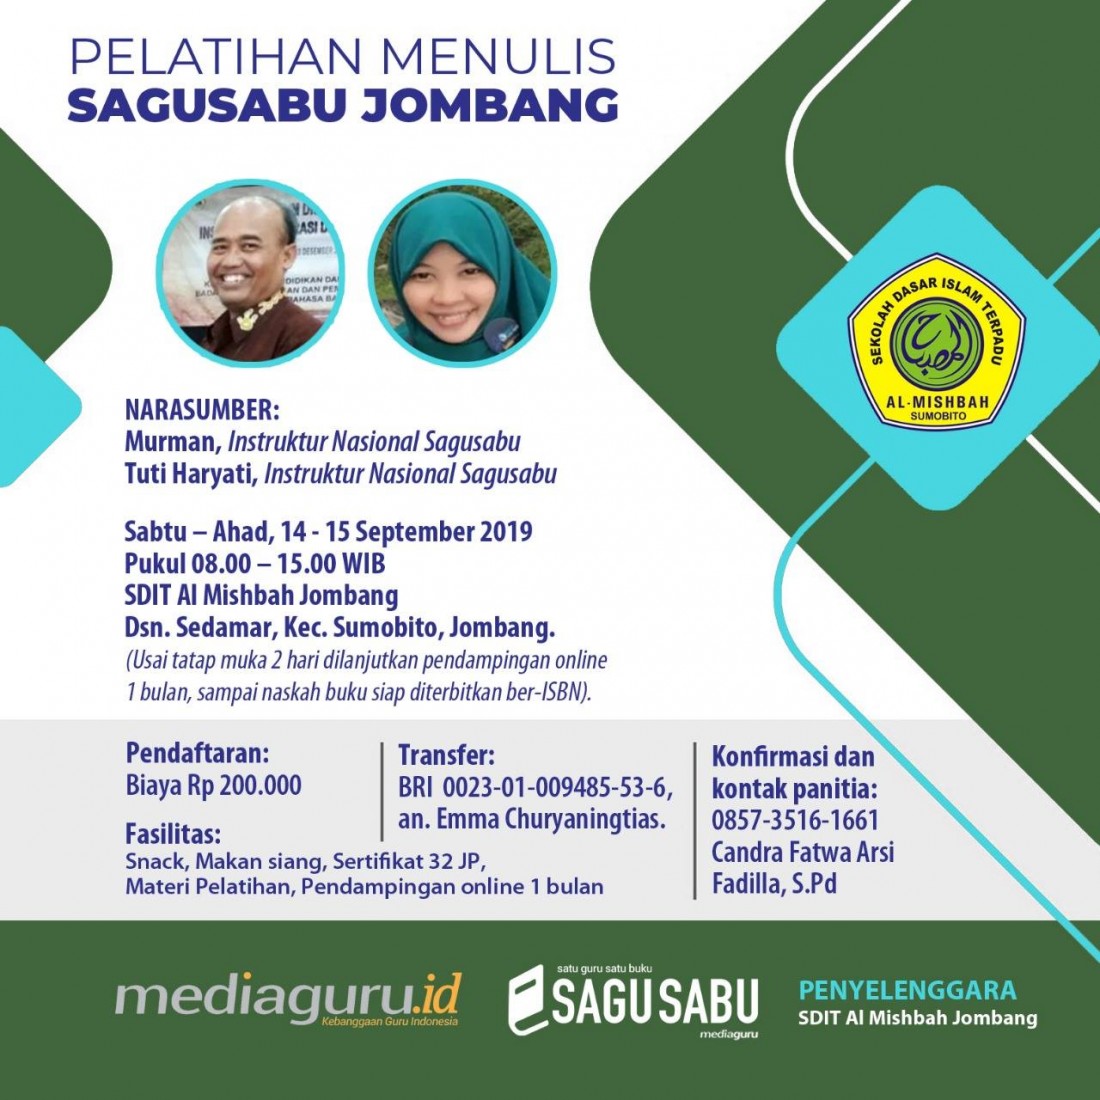 Pelatihan Menulis Sagusabu Jombang Jatim (14 - 15 September 2019)